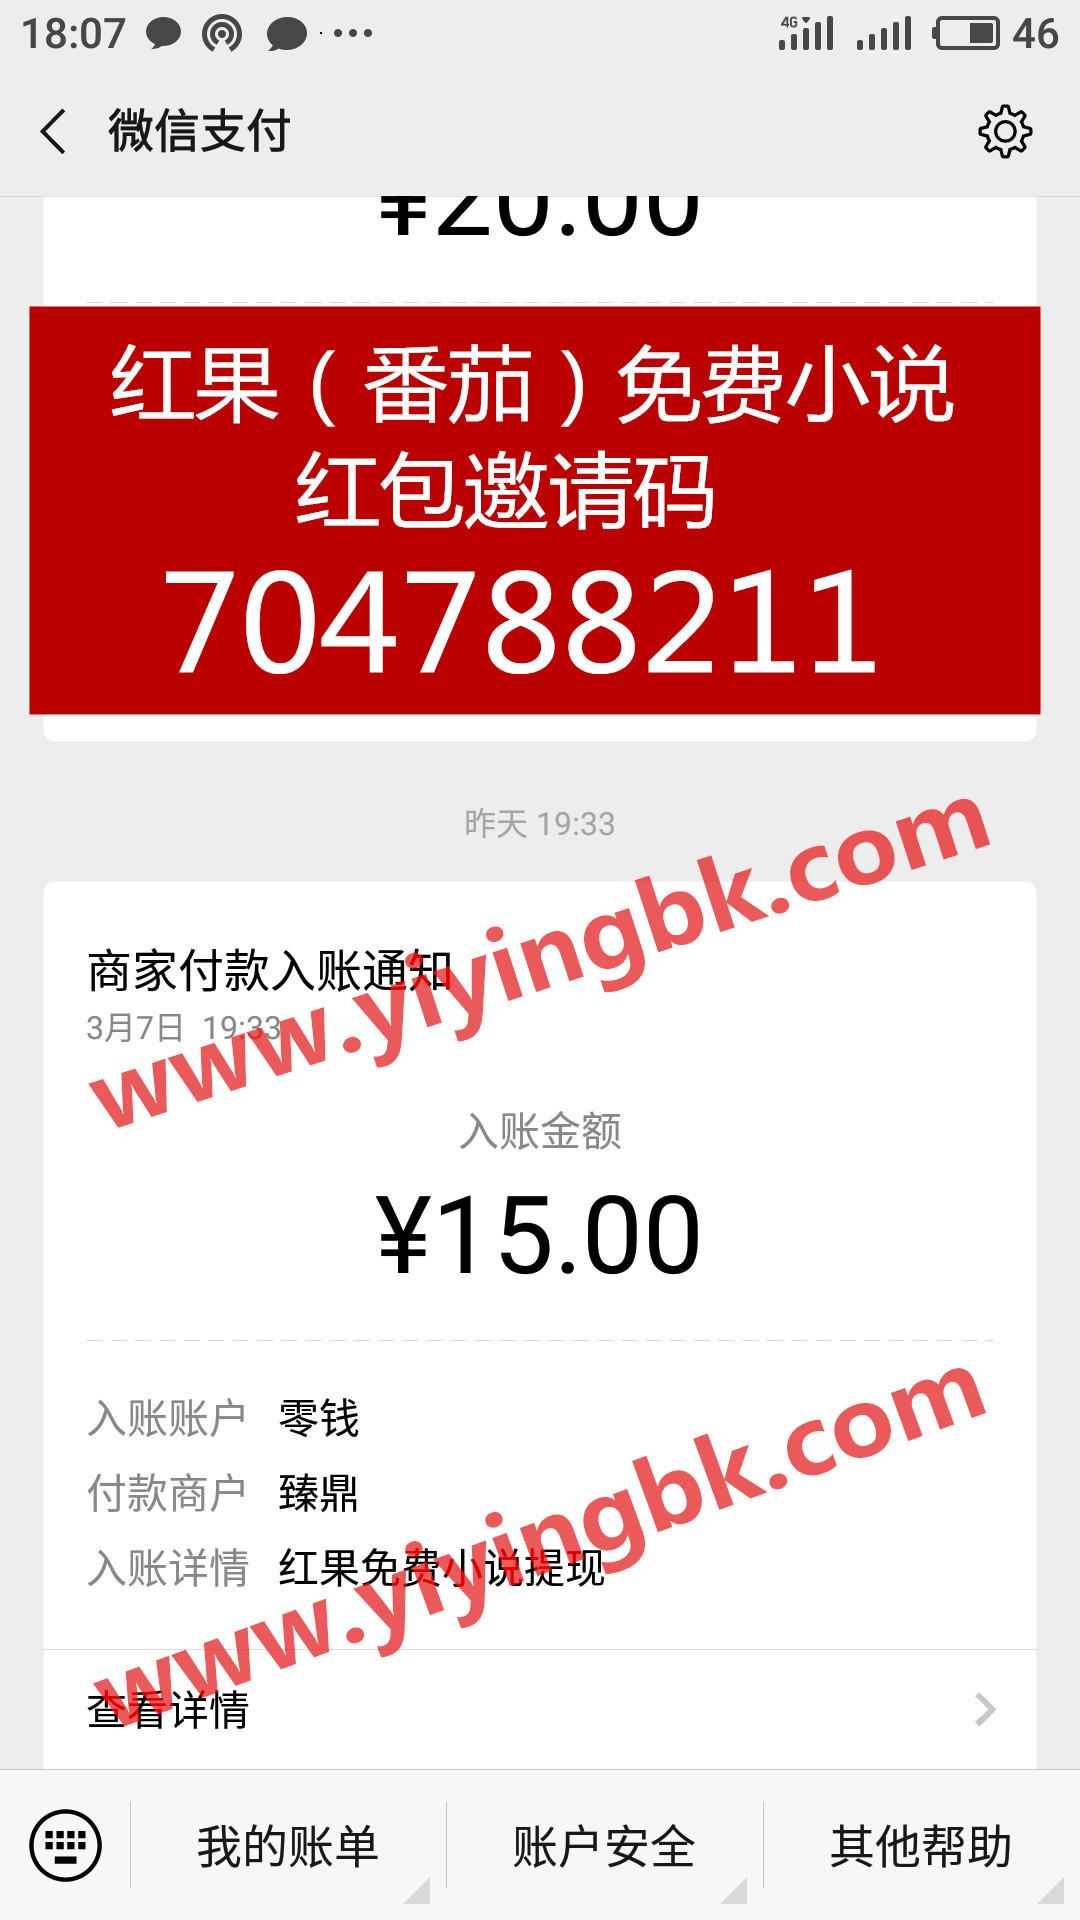 红果（番茄）免费小说，看小说就能赚钱，微信提现15元快速到账。www.yiyingbk.com